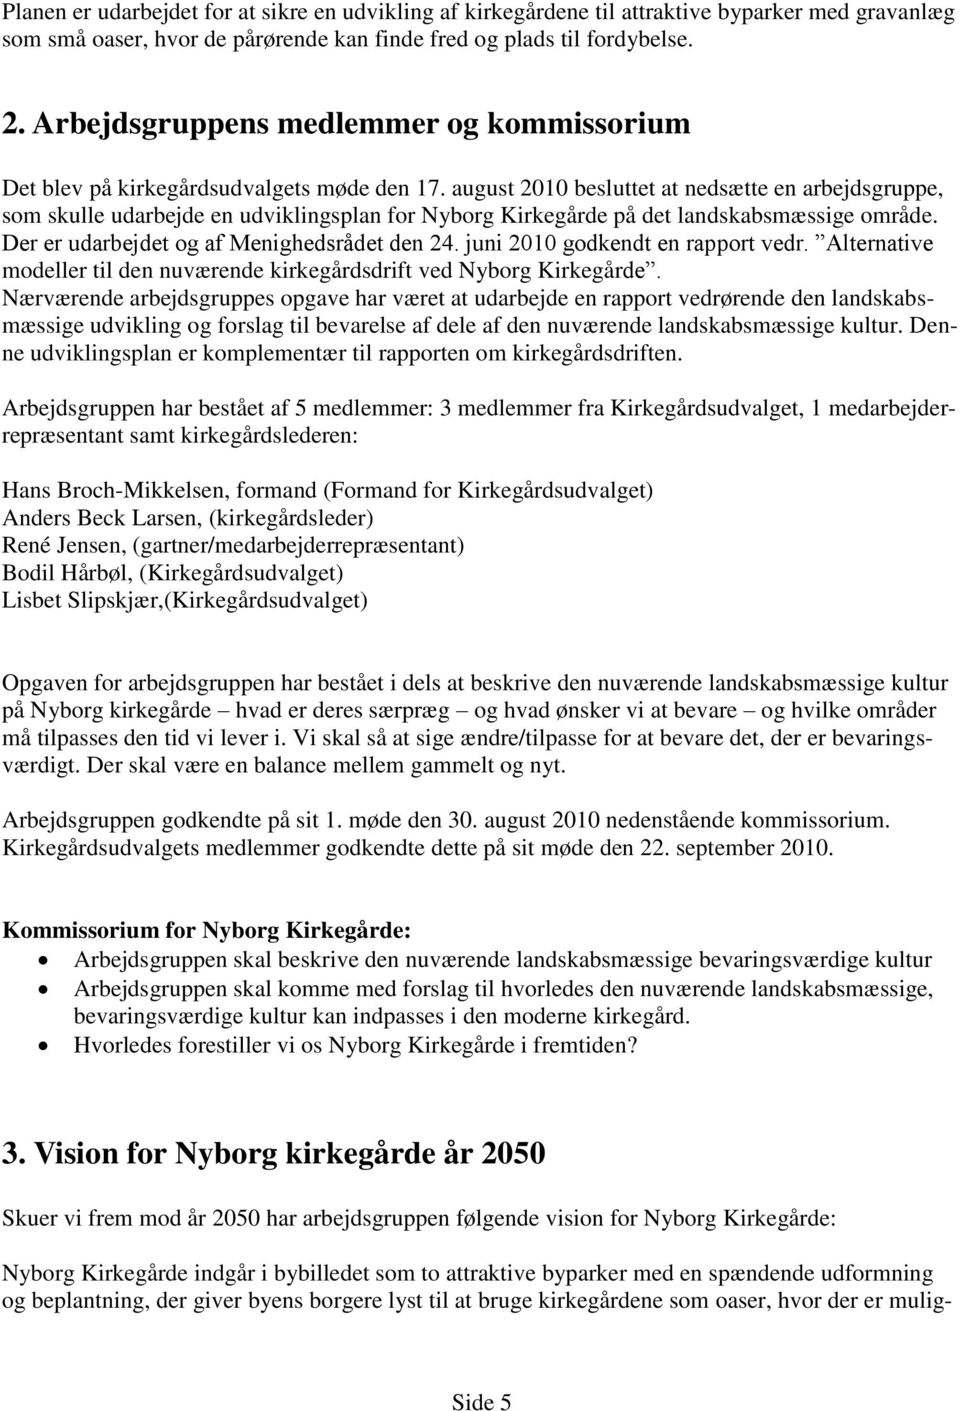 august 2010 besluttet at nedsætte en arbejdsgruppe, som skulle udarbejde en udviklingsplan for Nyborg Kirkegårde på det landskabsmæssige område. Der er udarbejdet og af Menighedsrådet den 24.